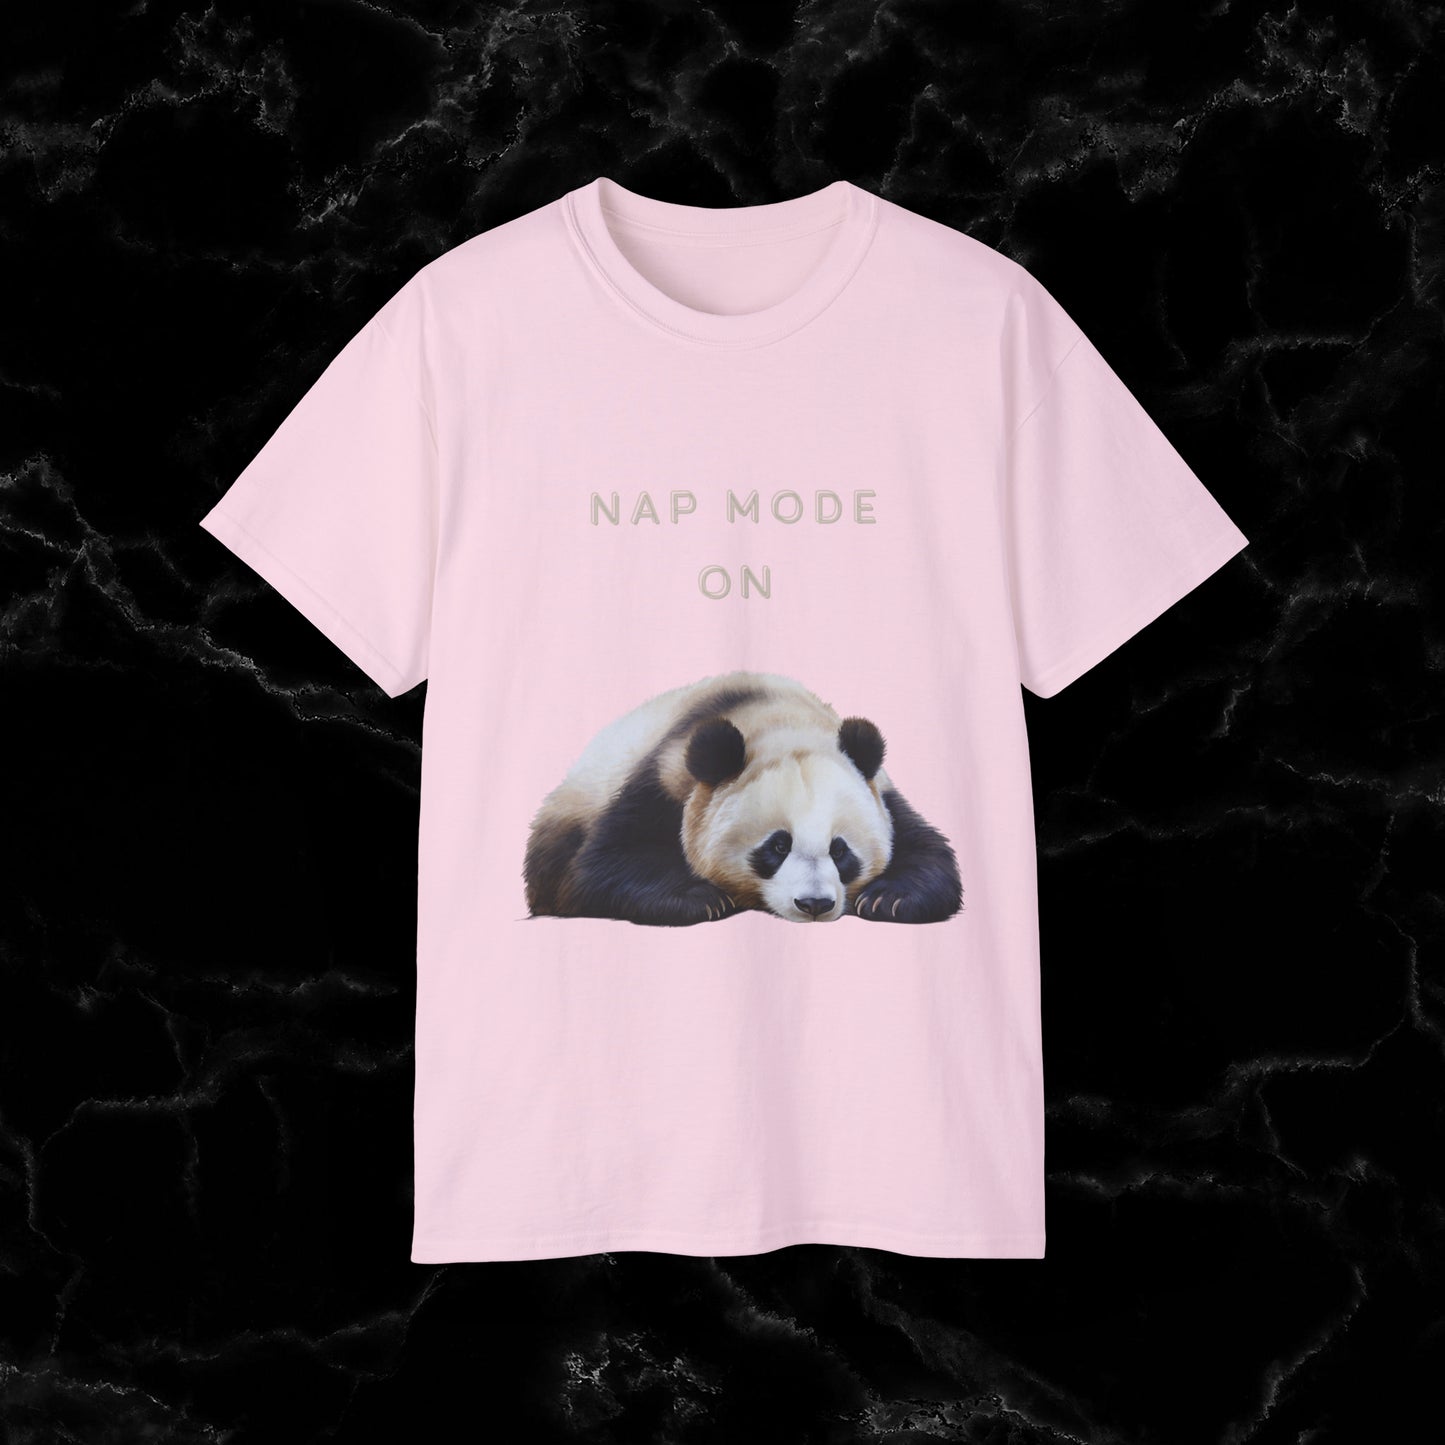 Nap Time Panda Unisex Funny Tee - Hilarious Panda Nap Design T-Shirt Light Pink S 